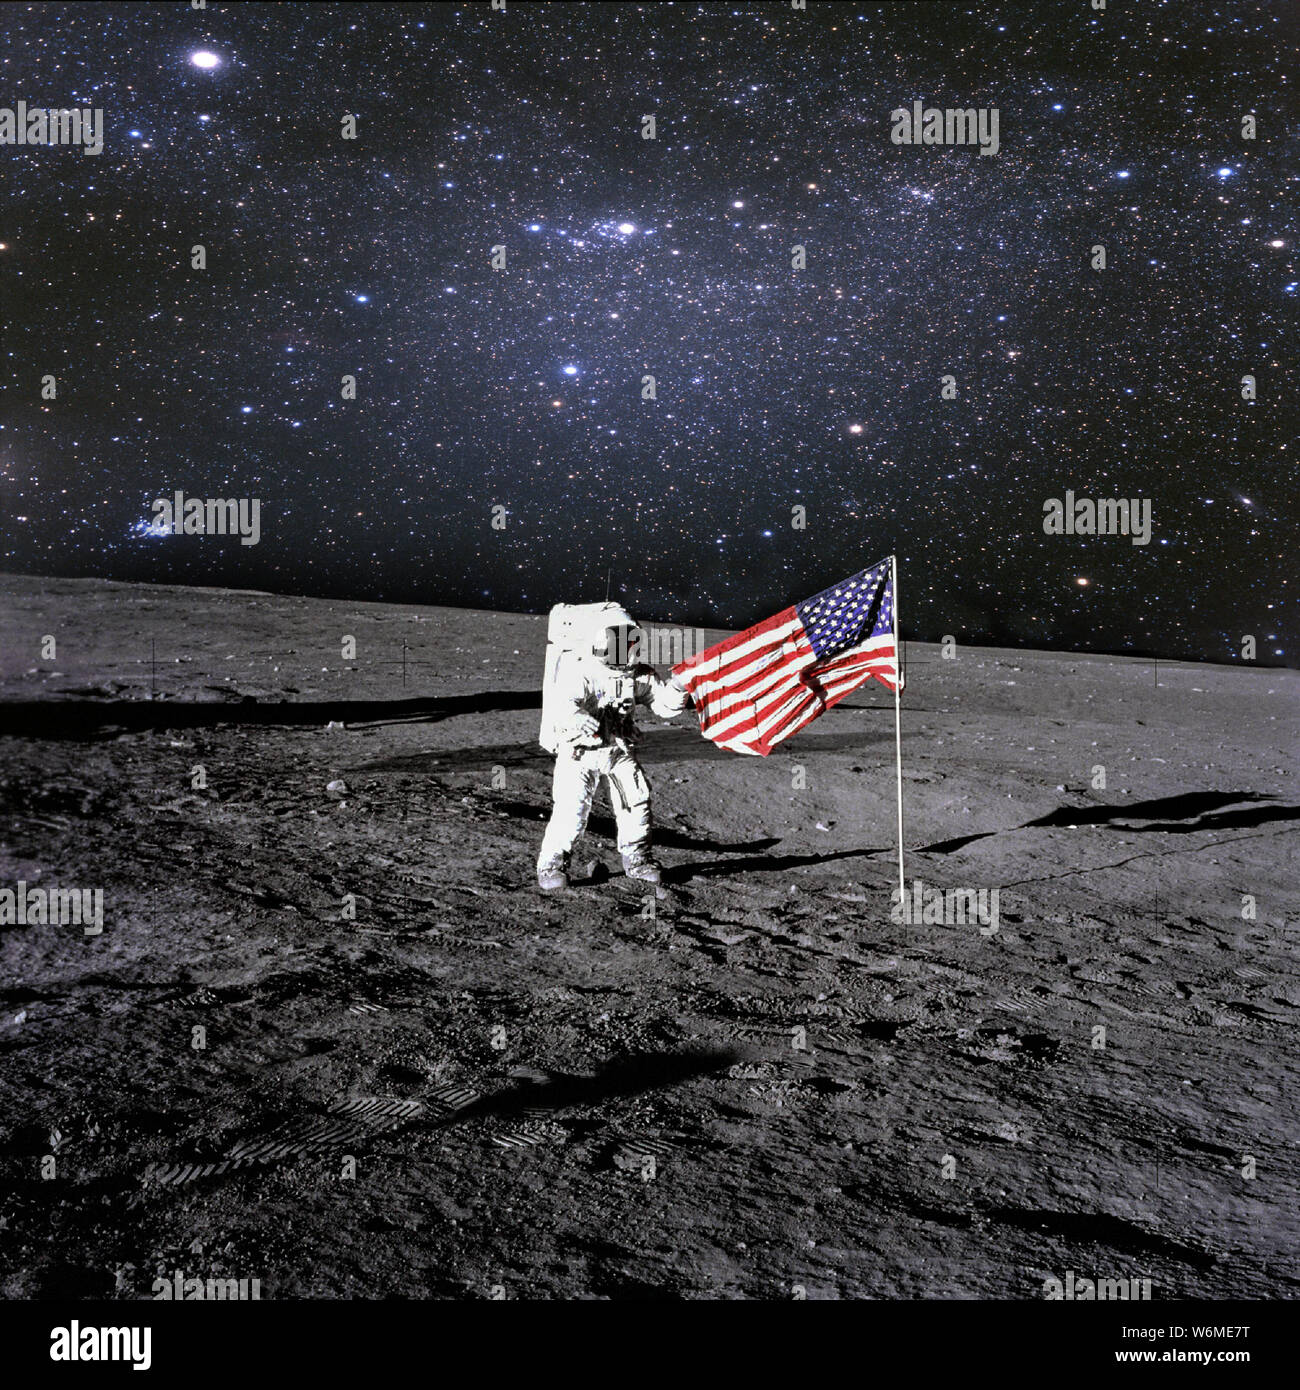 L'astronaute américain débarqué et mis son drapeau national sur la planète. Spaceman explorer planète inconnue. Éléments de cette image fournie par la NASA Banque D'Images